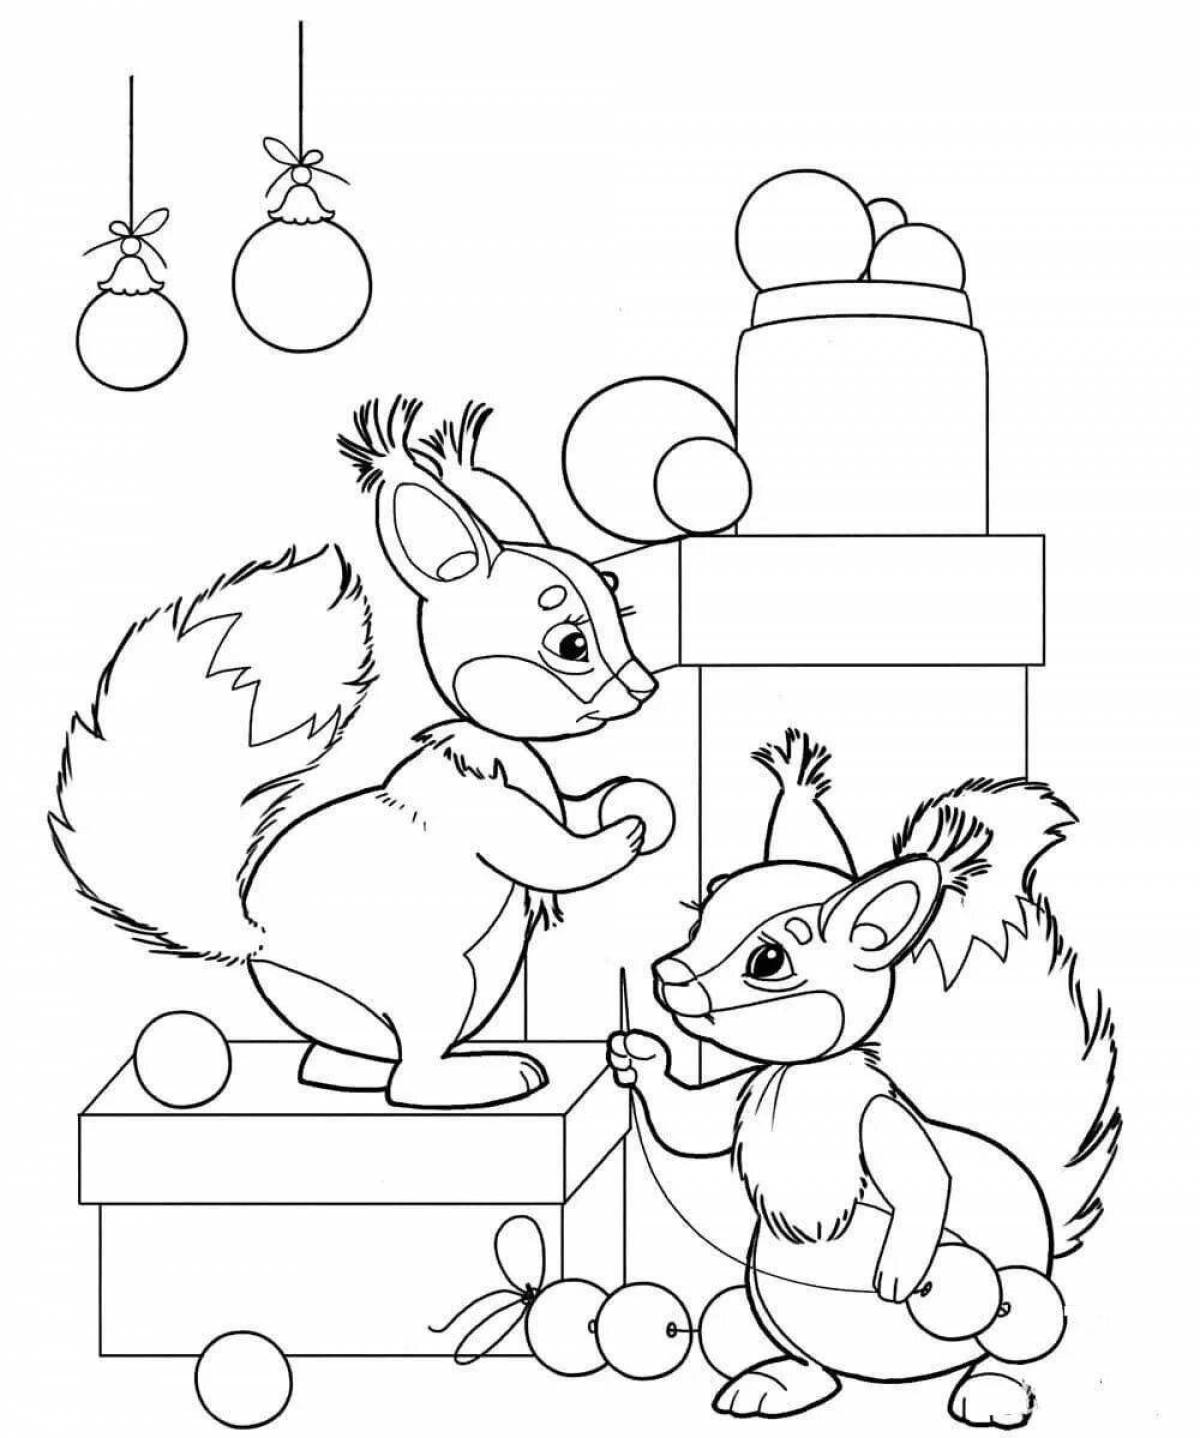 Coloring page joyful winter squirrel